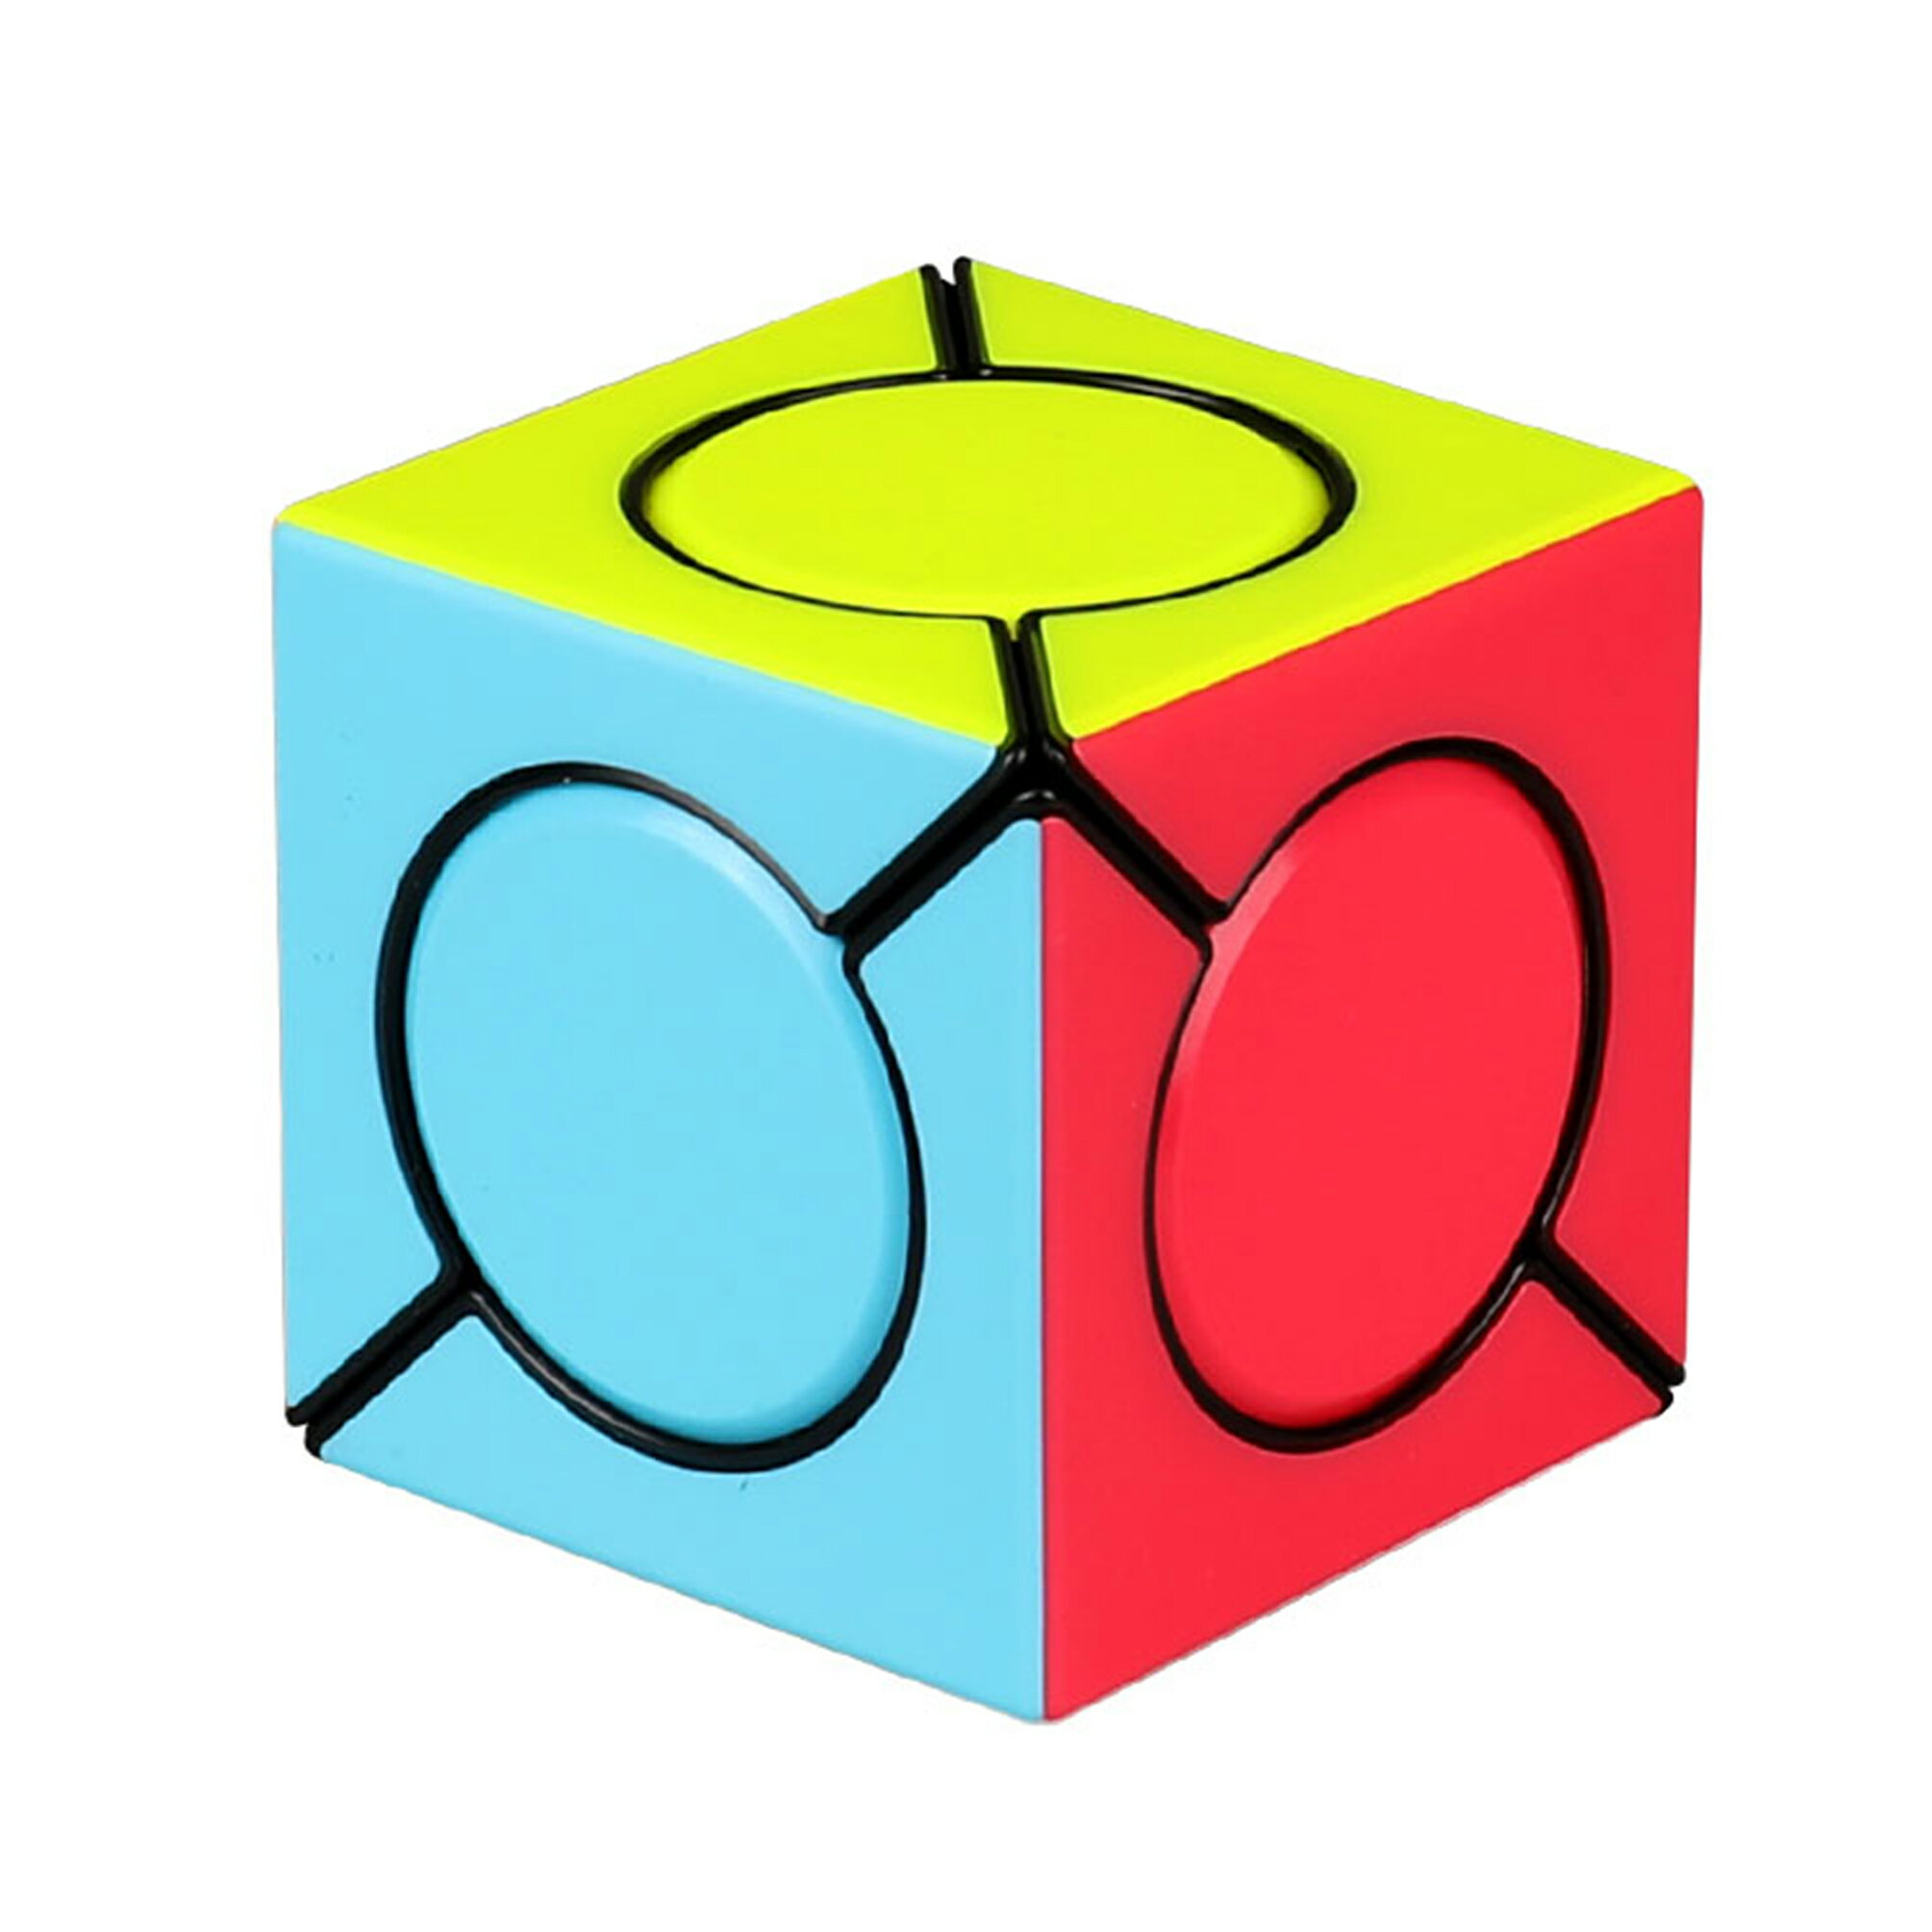 マジックキューブ Magic Cube 魔方 競技専用キューブ 回転スムーズ 立体パズル 世界基準配色 ストレス解消 脳トレ Color 子供 ギフト クリスマス プレゼント